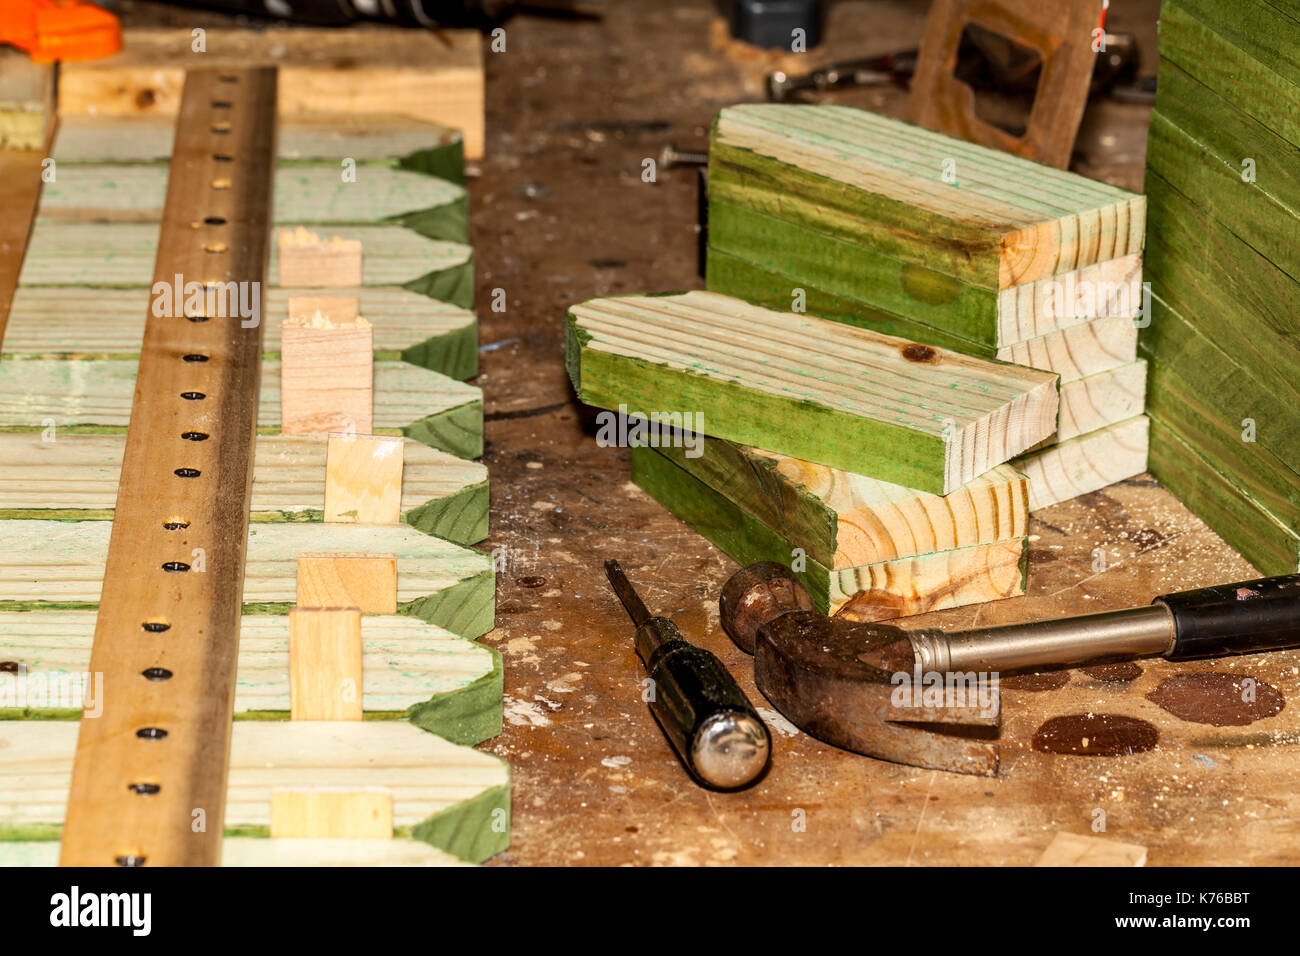 Tablones de madera - Producción de postes de madera, herramientas, cabañas,  madera impregnada y estabilizada para el jardín, contenedores y embalajes  de madera, muebles individuales de madera.